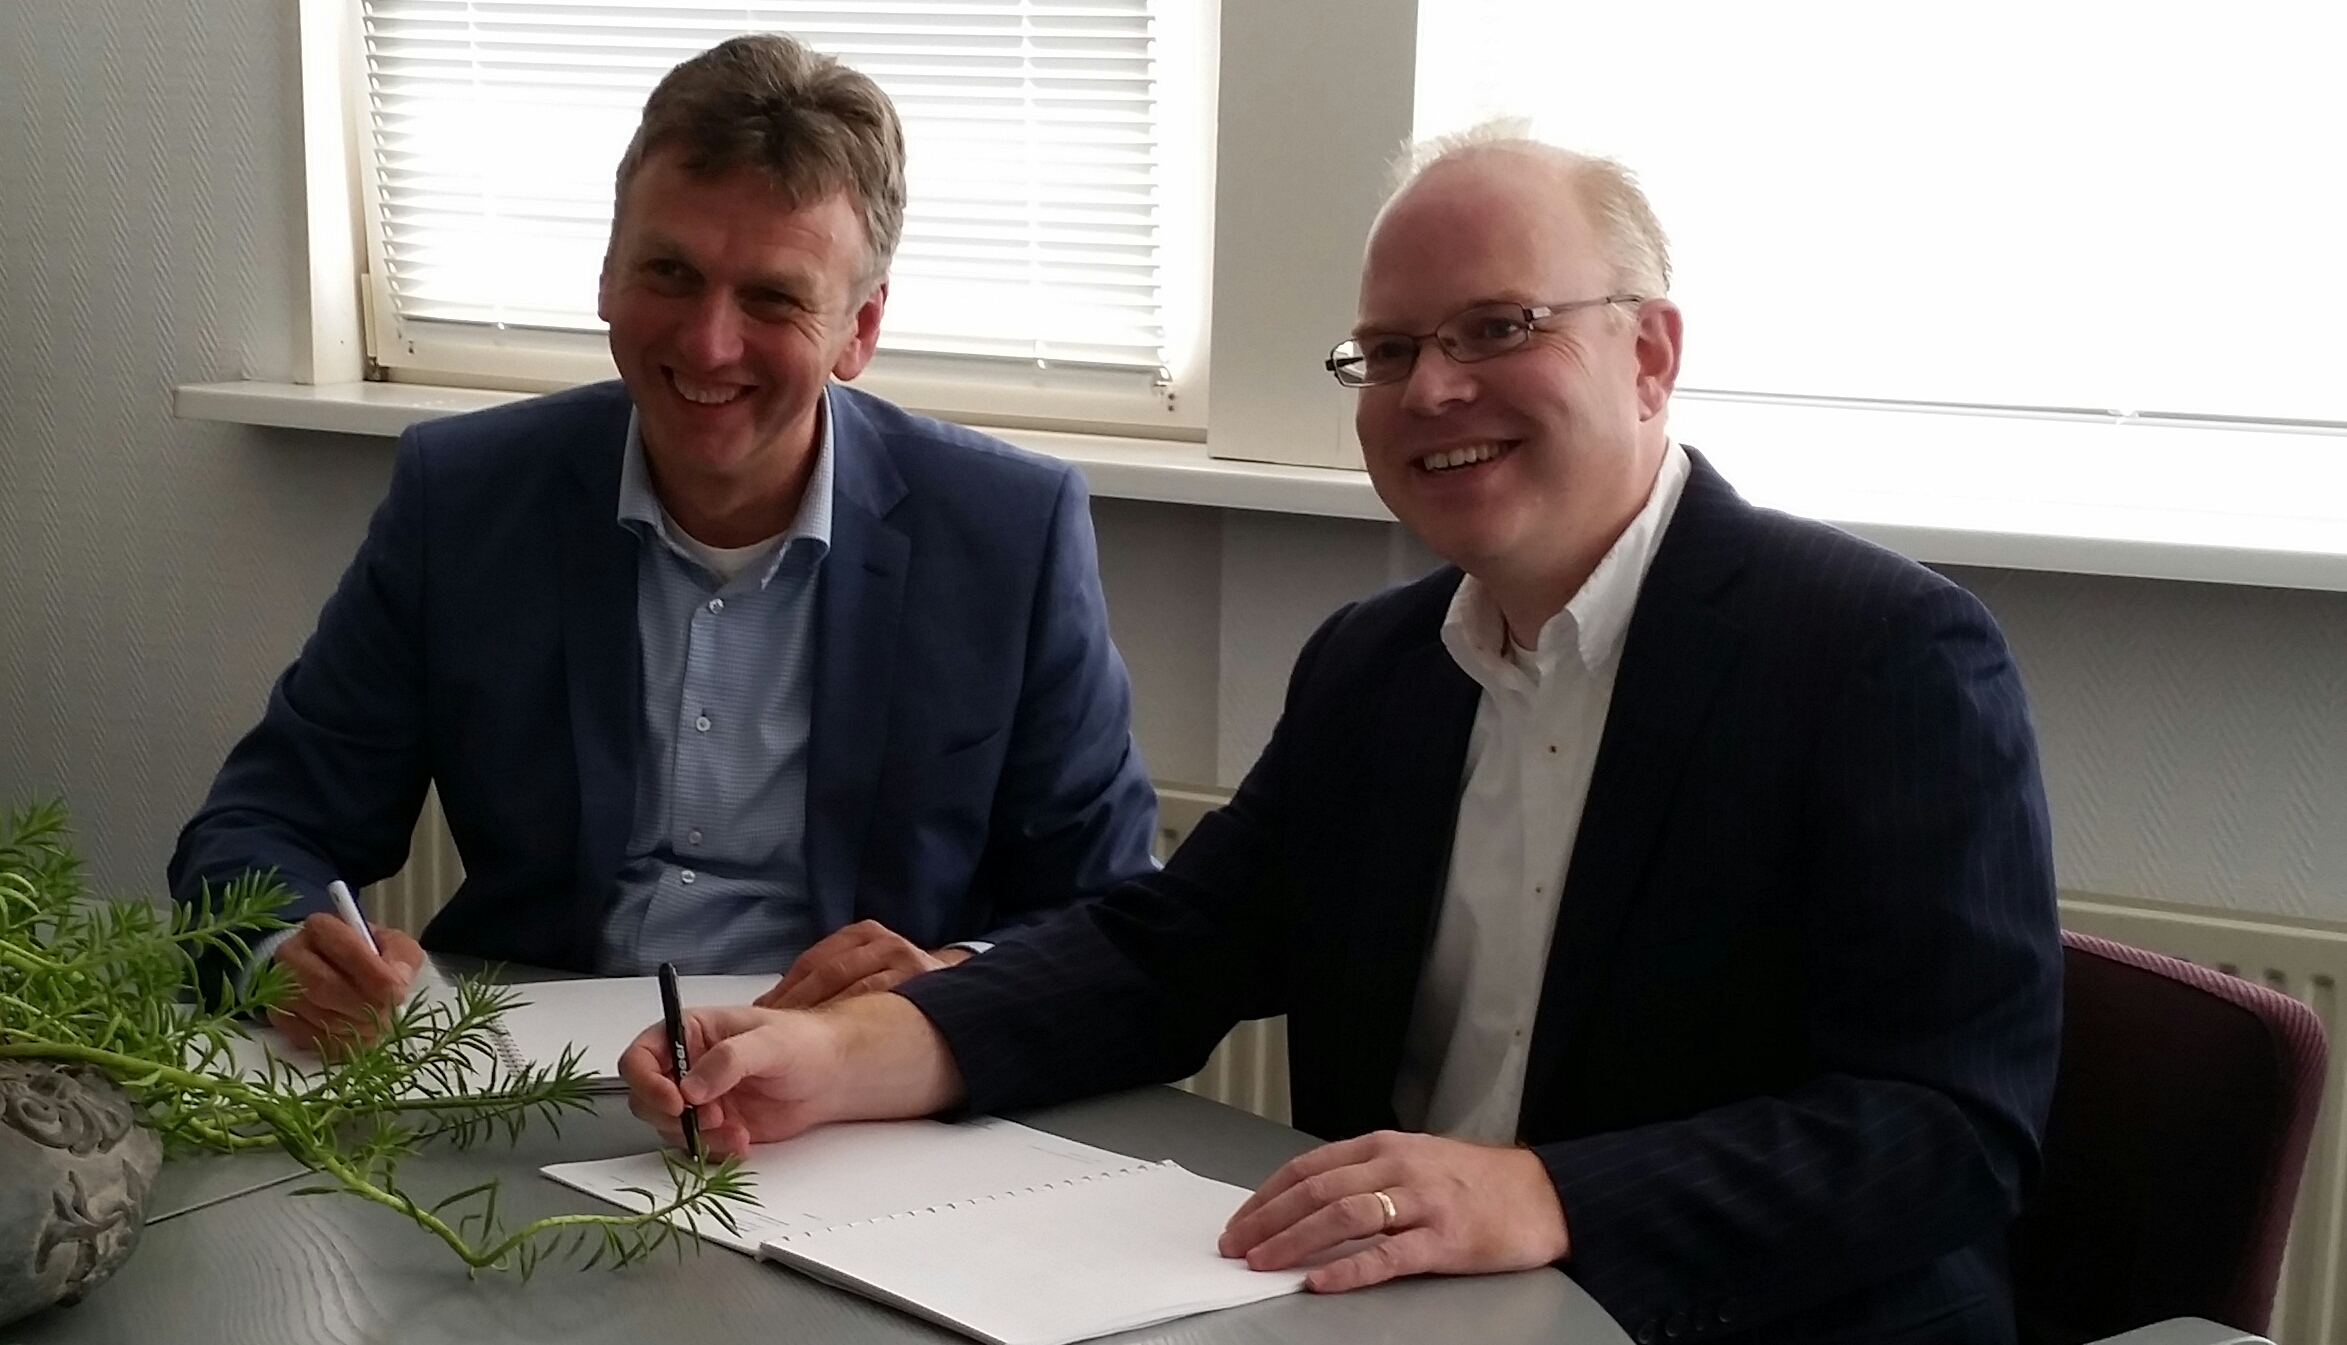 Franchisenemer Erwin van Rooij (r) tekent zijn franchiseovereenkomst voor Safety-atwork Tiel-Nijmegen. Links op de foto franchisegever Ad Kalkman. Bron: FranchiseFormules.NL